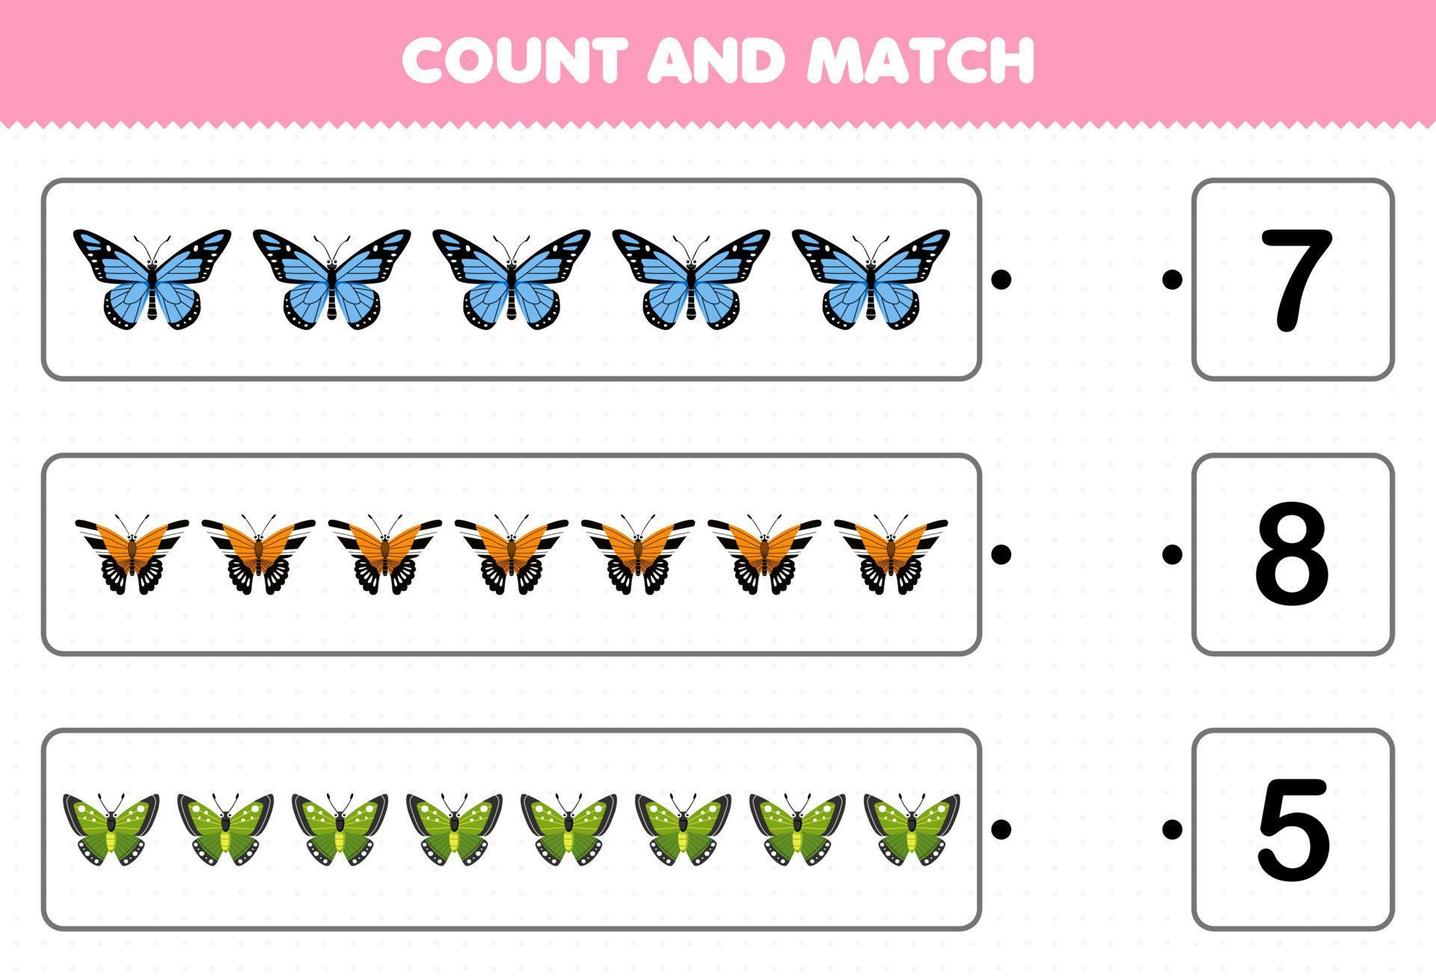 juego educativo para niños cuente el número de mariposas de dibujos animados lindos y haga coincidir con los números correctos hoja de trabajo de error imprimible vector